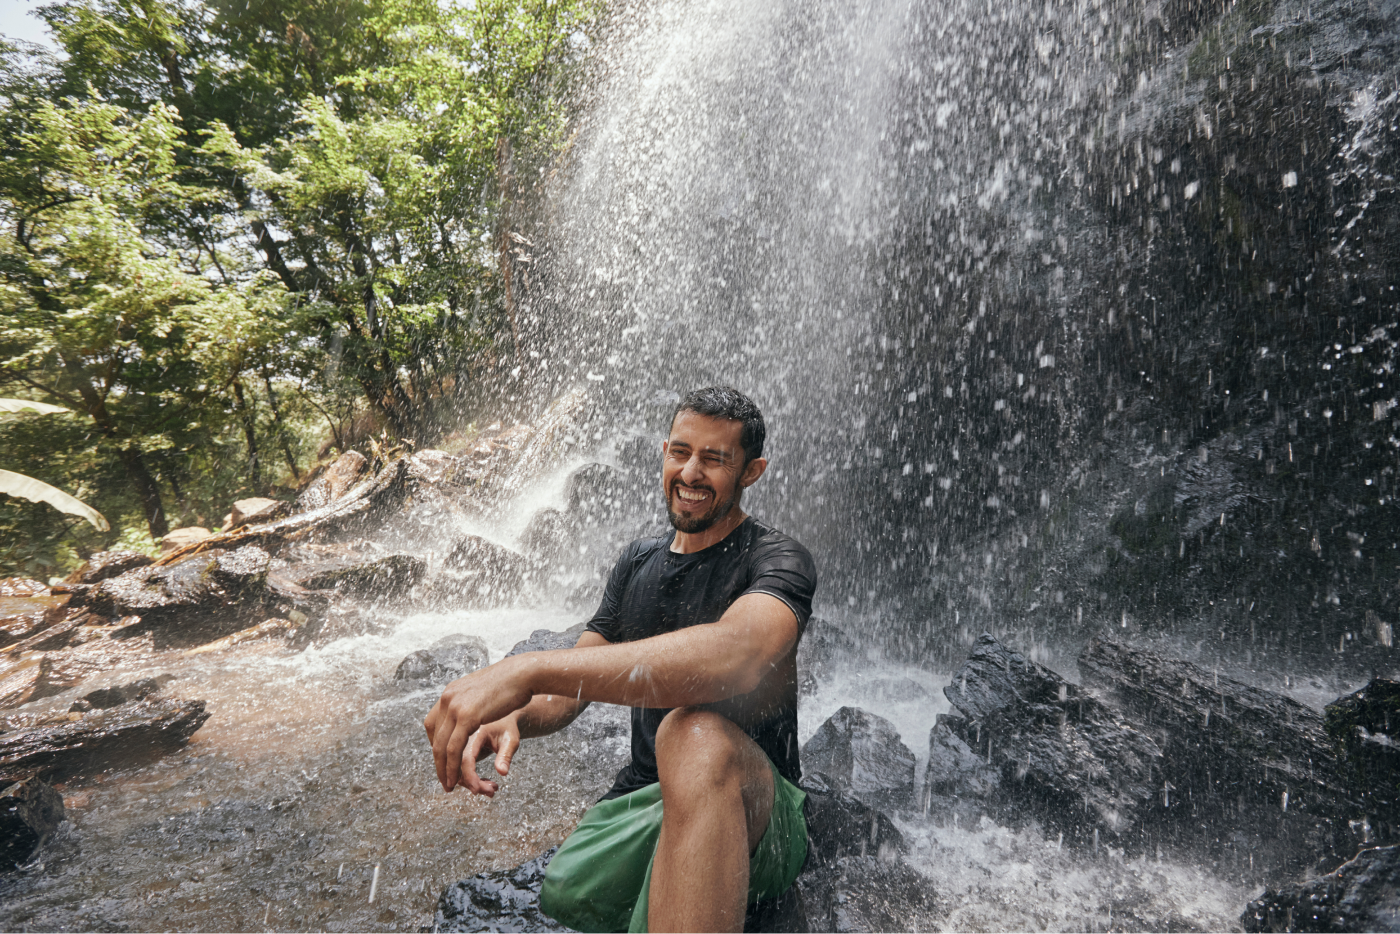 Dopo una lunga escursione, questo avventuriero si rinfresca nelle cascate di Valle De Bravo